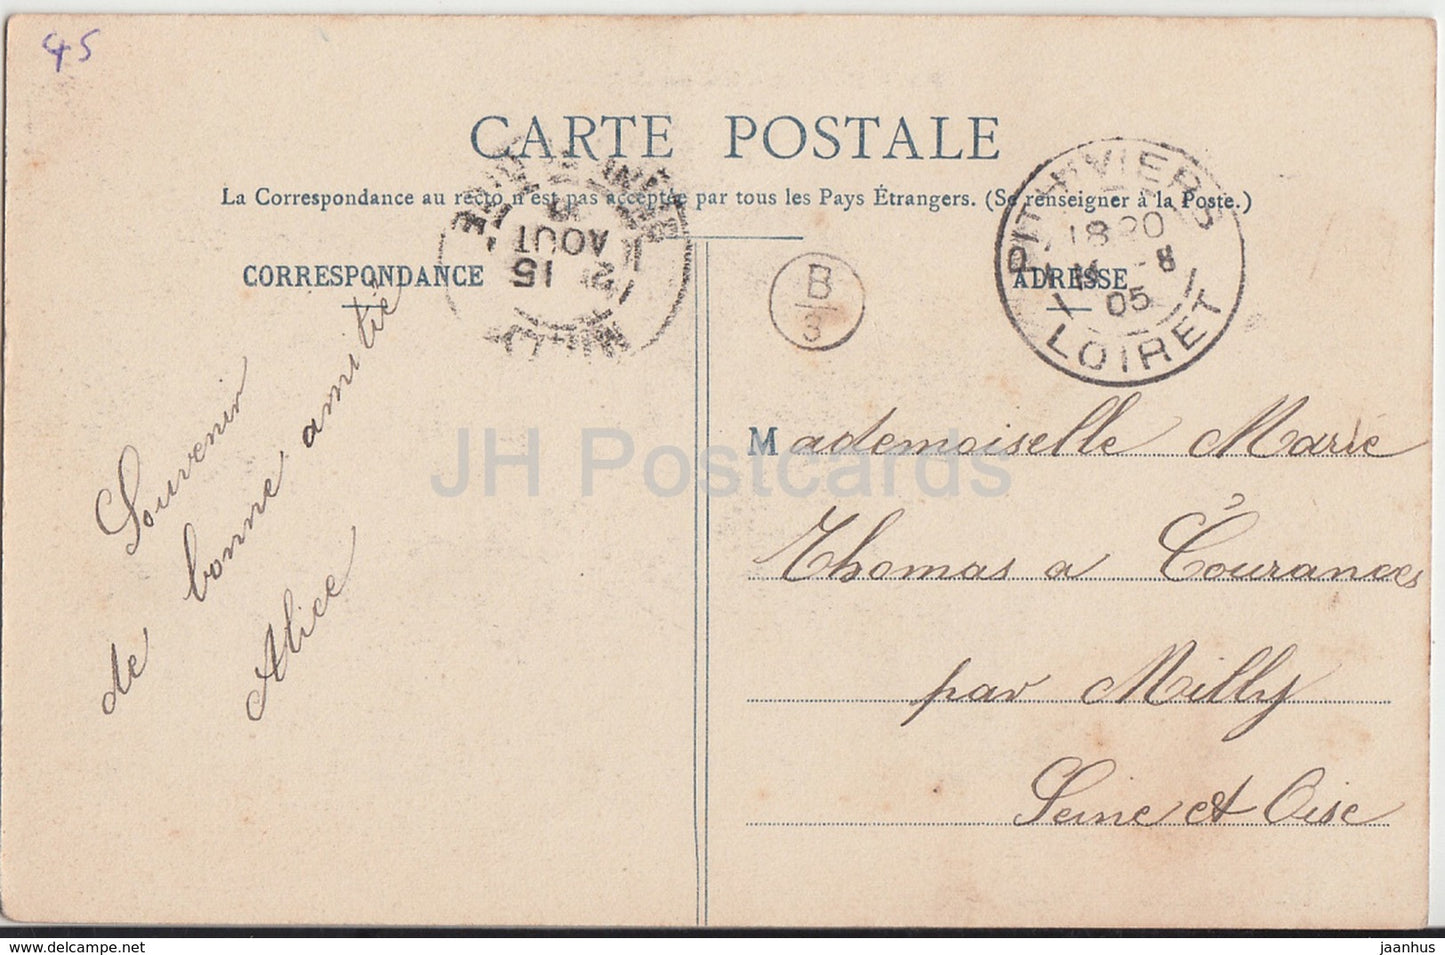 Malesherbes - Château de Rouville - château - 1905 - carte postale ancienne - France - occasion